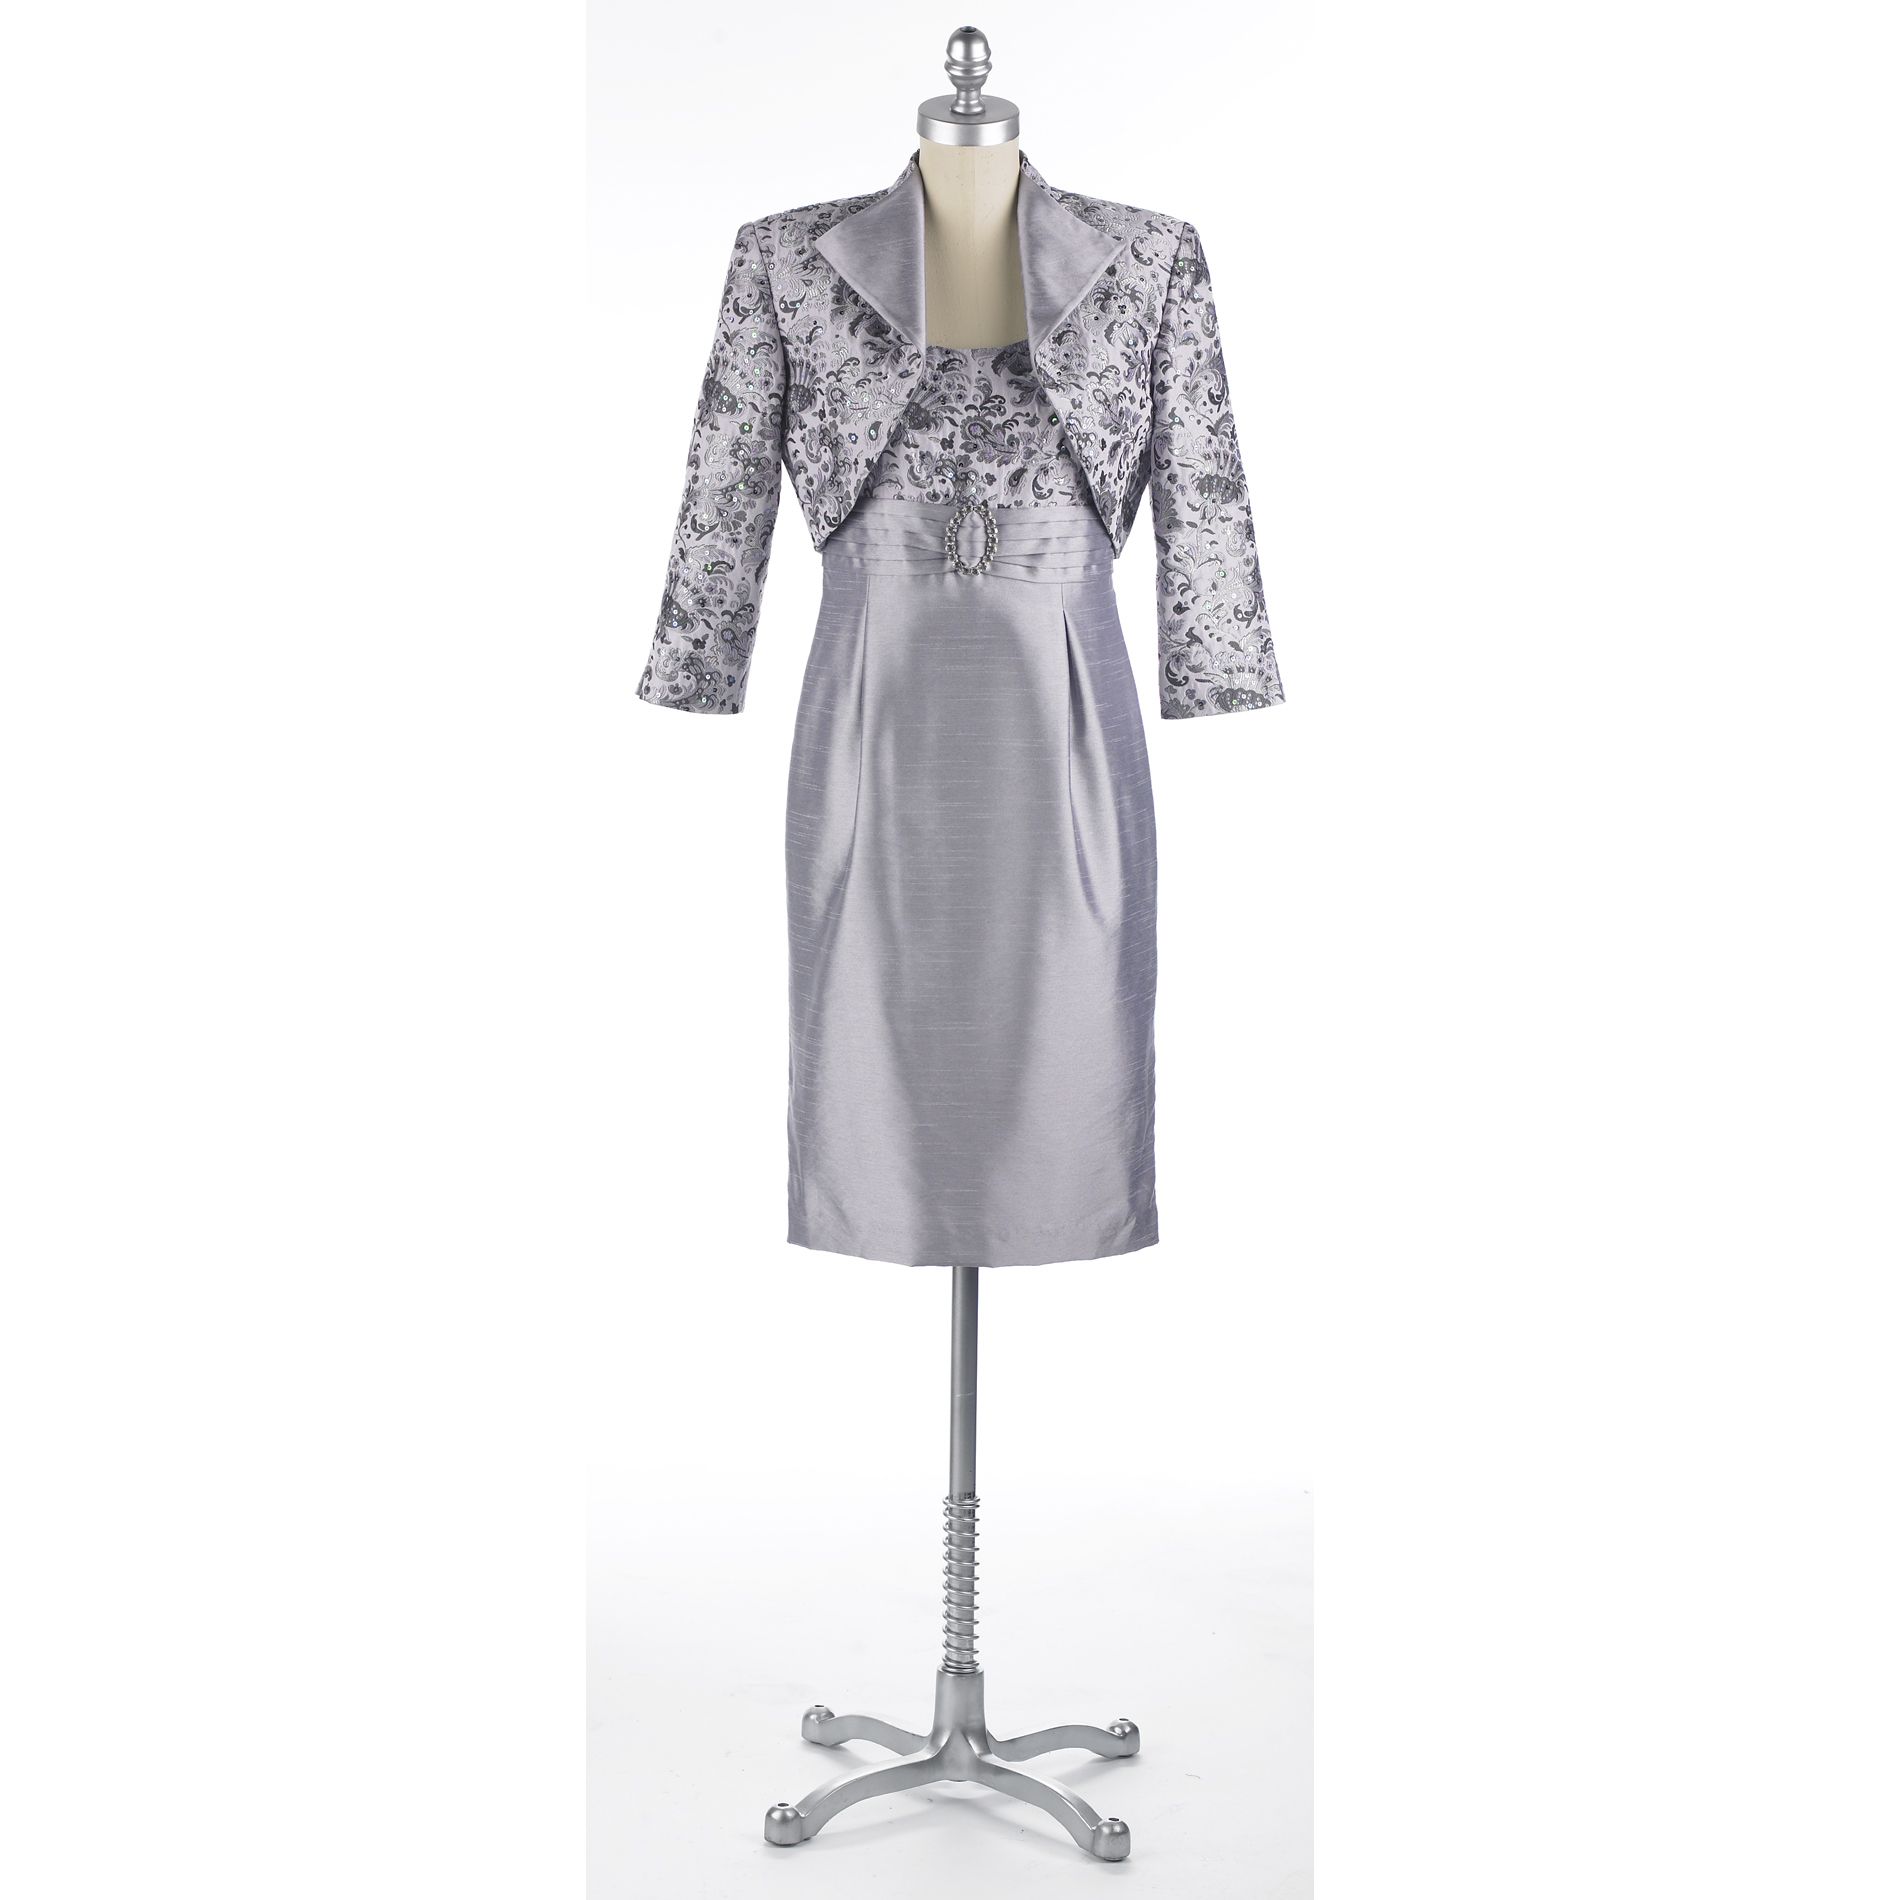 Kathy Roberts 2-Piece Brocade Jacquard Jacket Dress